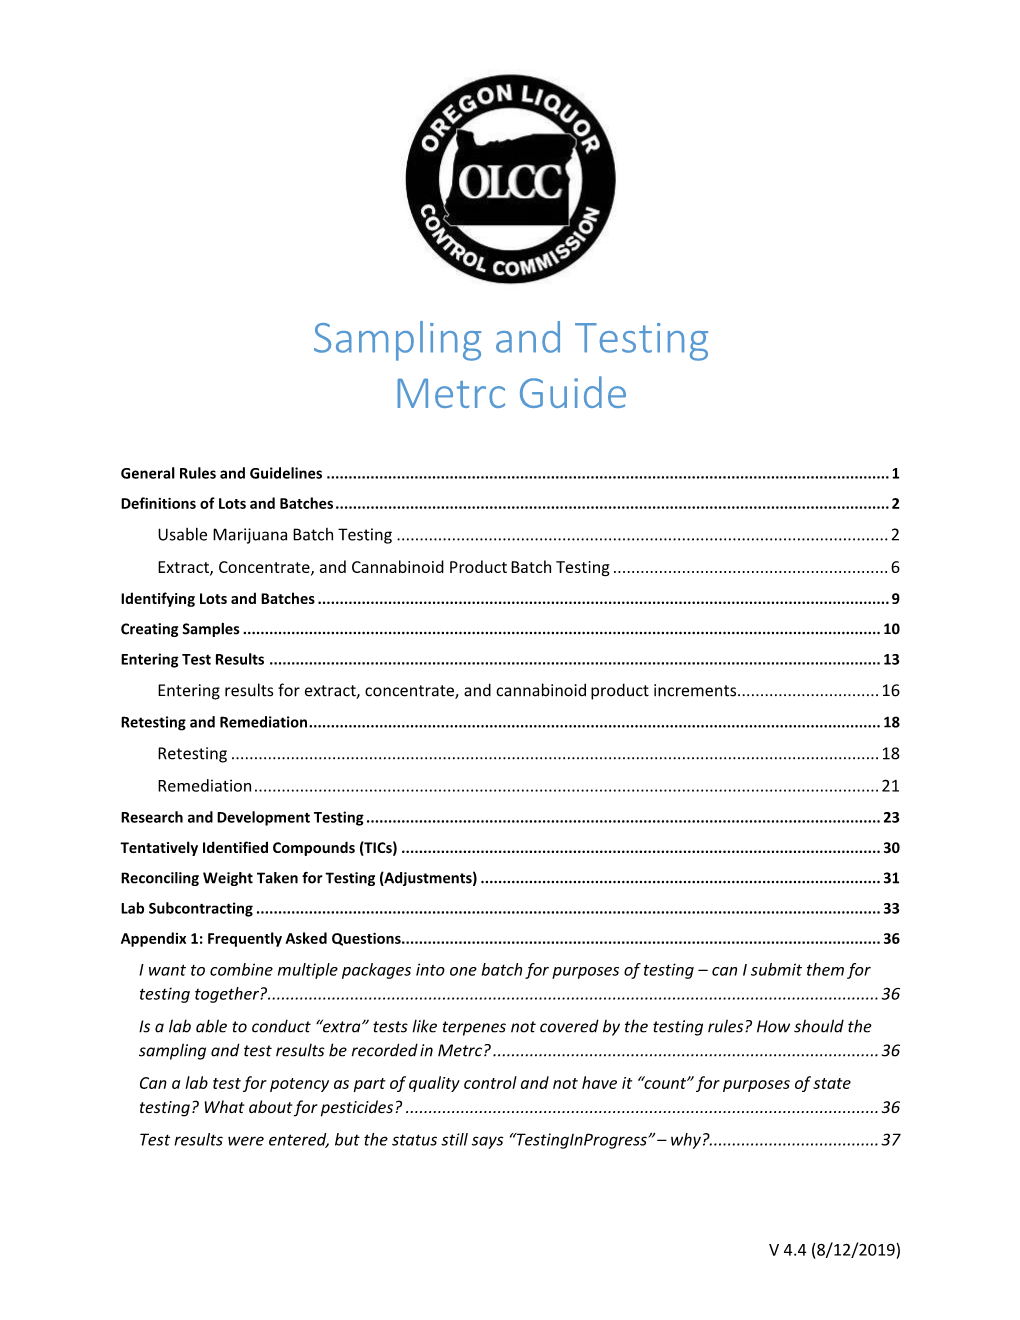 Sampling and Testing Metrc Guide